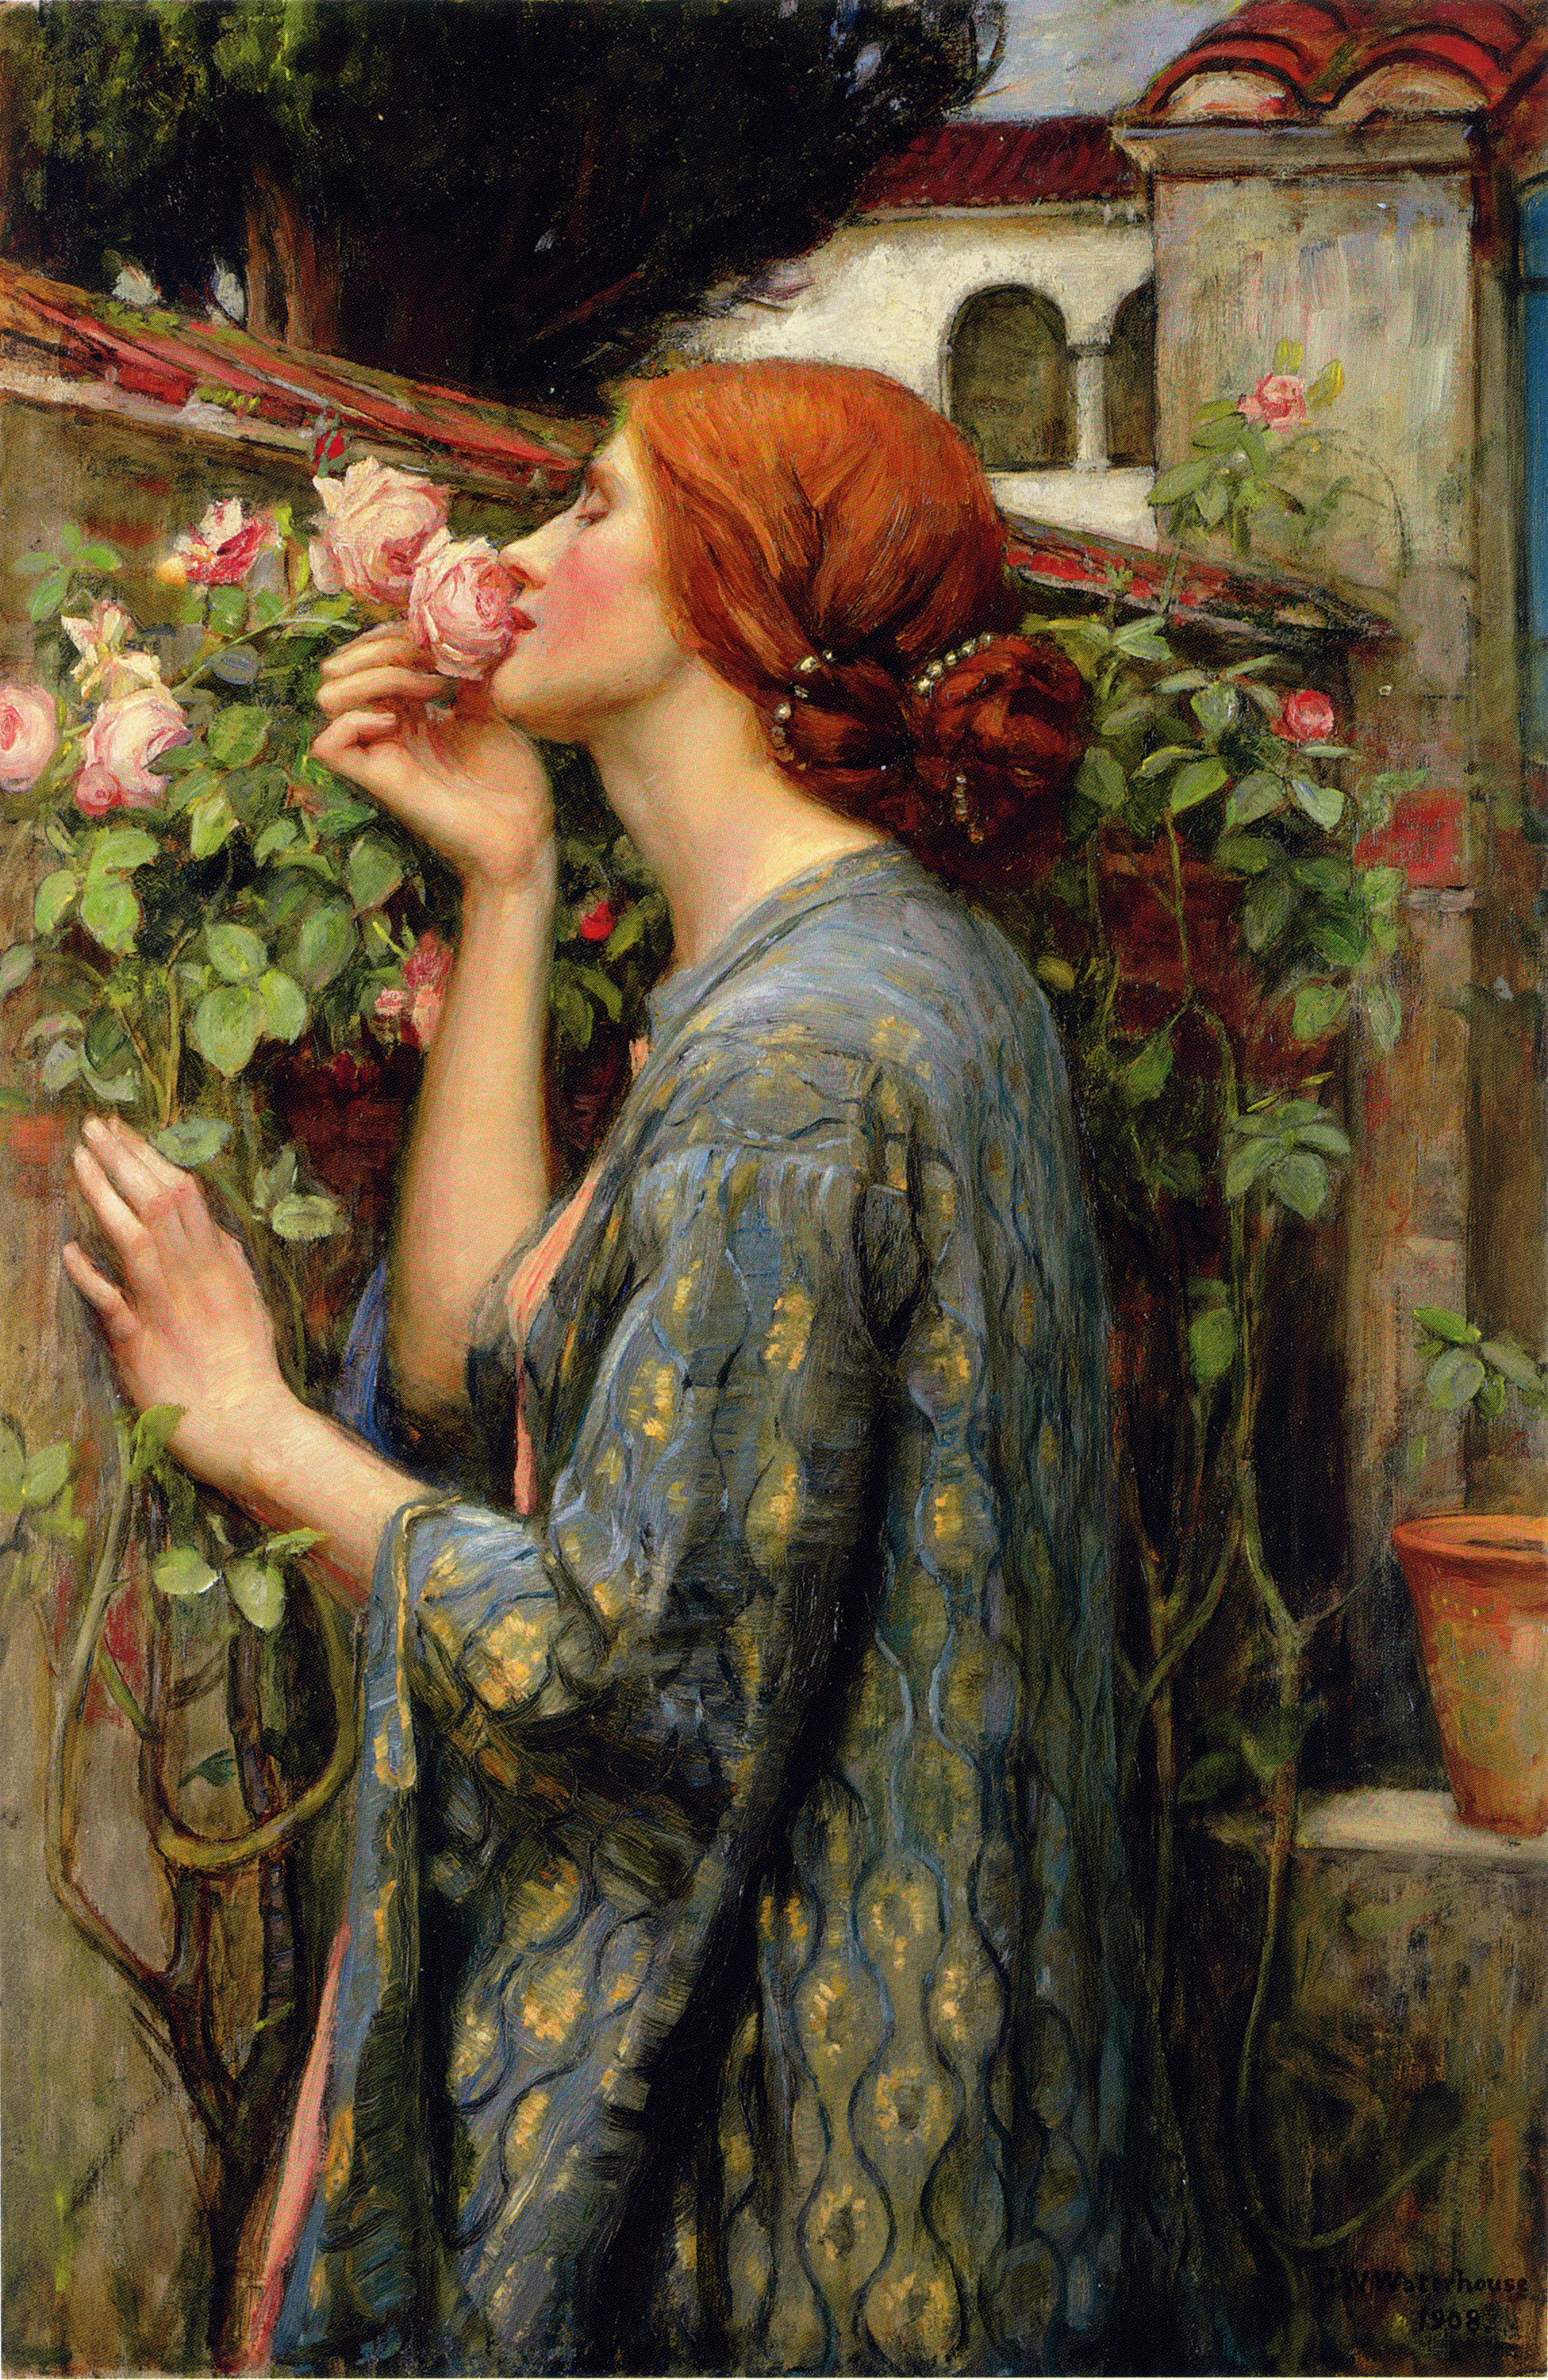 Dusza róży by John William Waterhouse - 1903 - 88.3 x 59.1 cm 